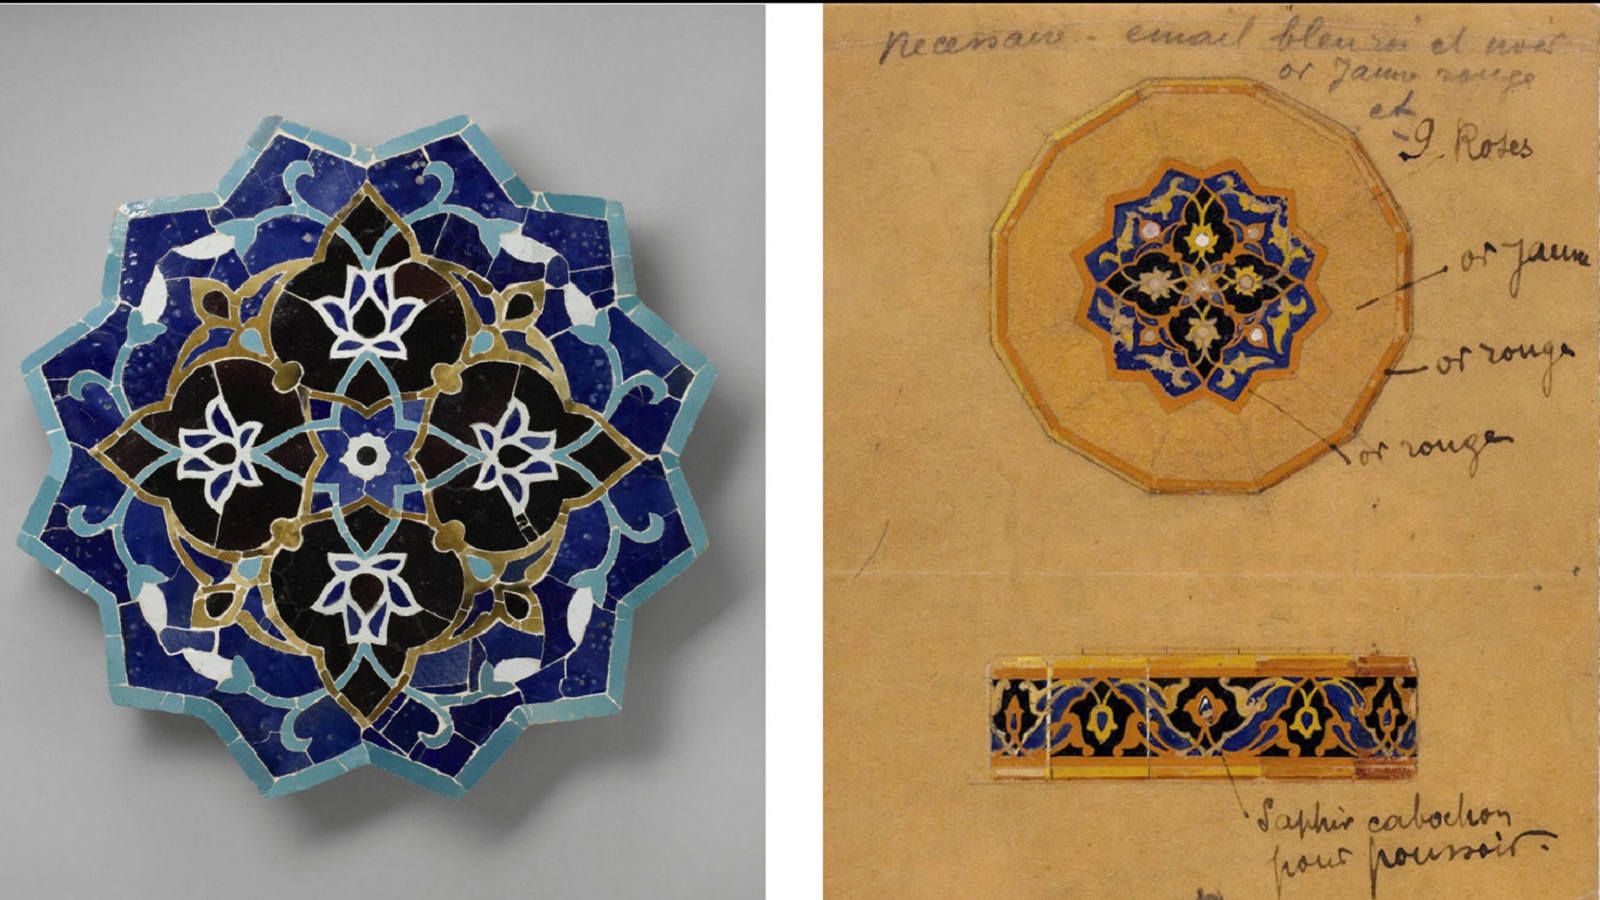  قطعة فارسية من القرن الرابع عشر، مع دراسة تخطيطية من 1920.